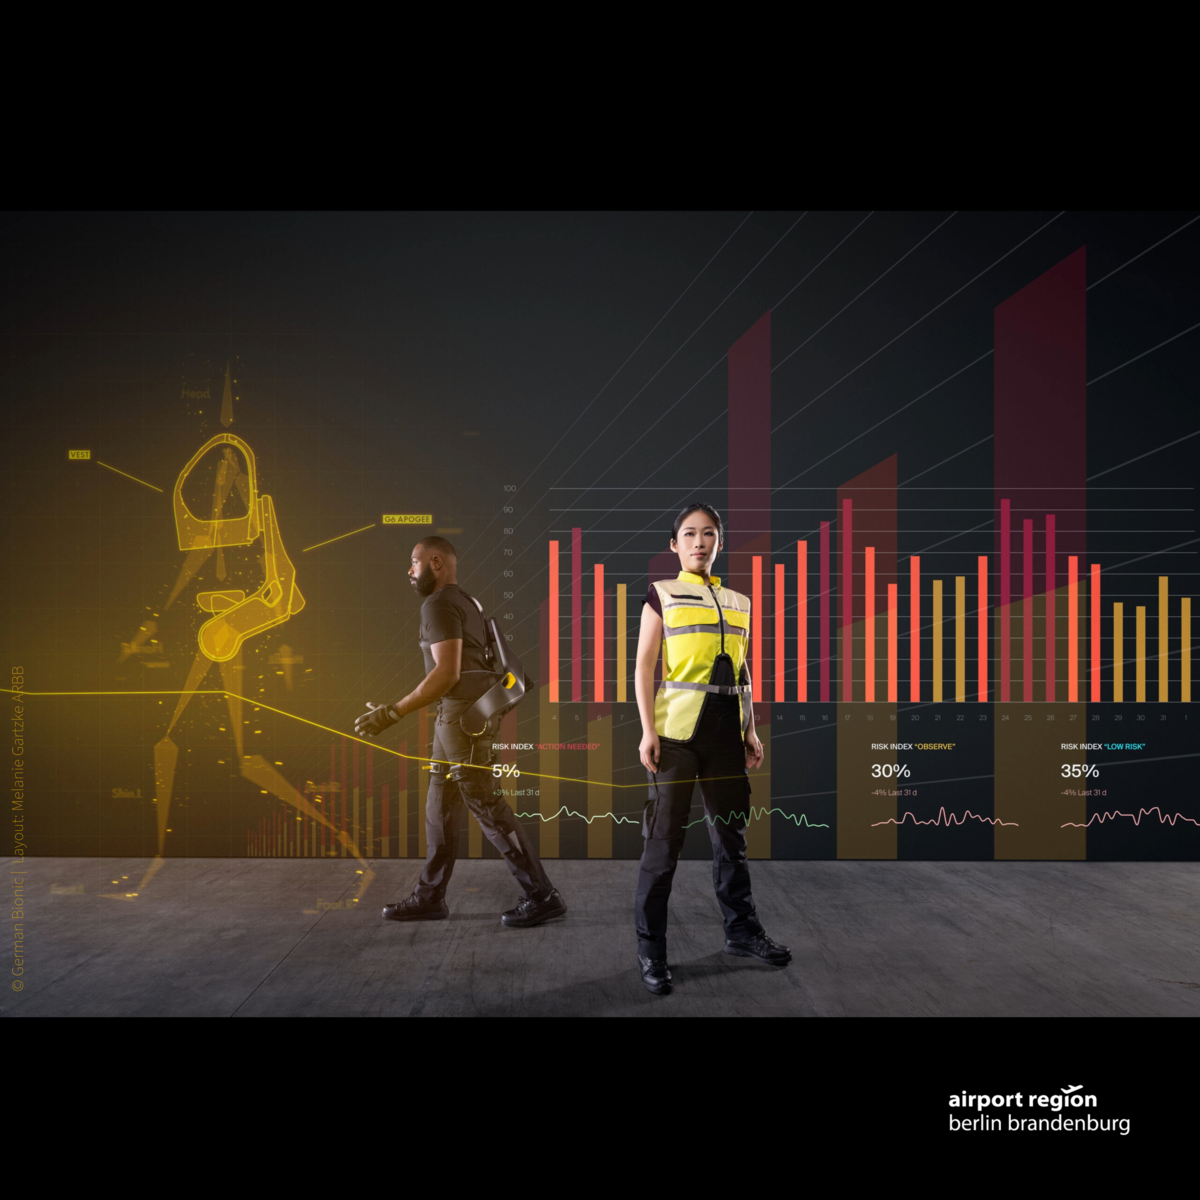 Grafik zeigt einen Mann und eine Frau, die ein Exoskelett von der Fimra German Bionic tragen, um körperlich schwere Arbeiten einfacher bewältigen zu können. Im Hintergrund sieht man animiert ein Säulen-Diagramm sowie mehrere Trendlinien. Diese symbolisieren die ki-gestützte Software und deren kontinuierliche Anpassung des Exoskeletts an die Anforderungen.